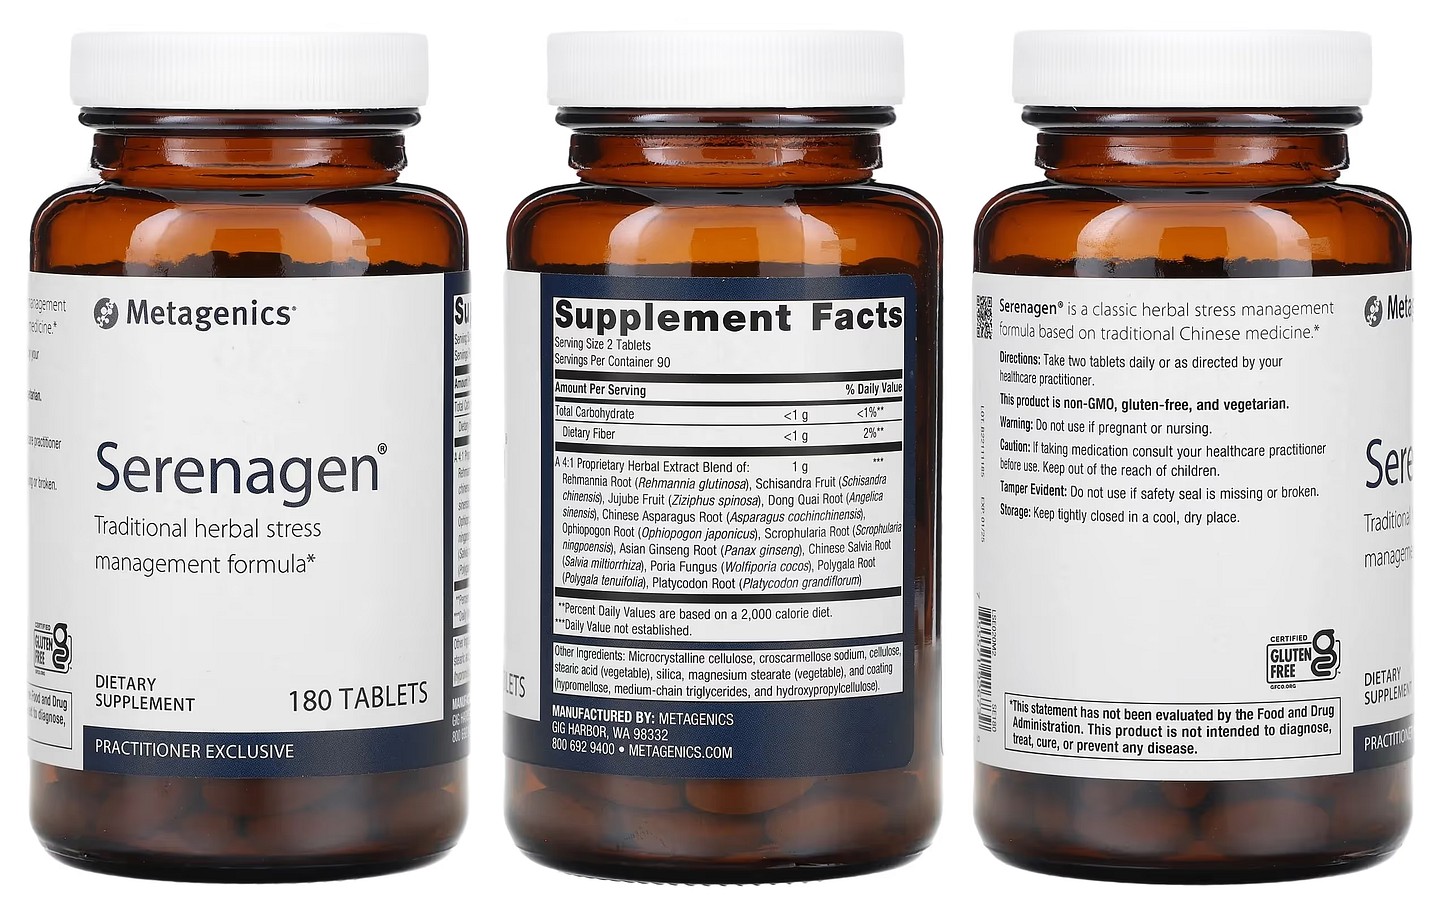 Metagenics, Serenagen packaging